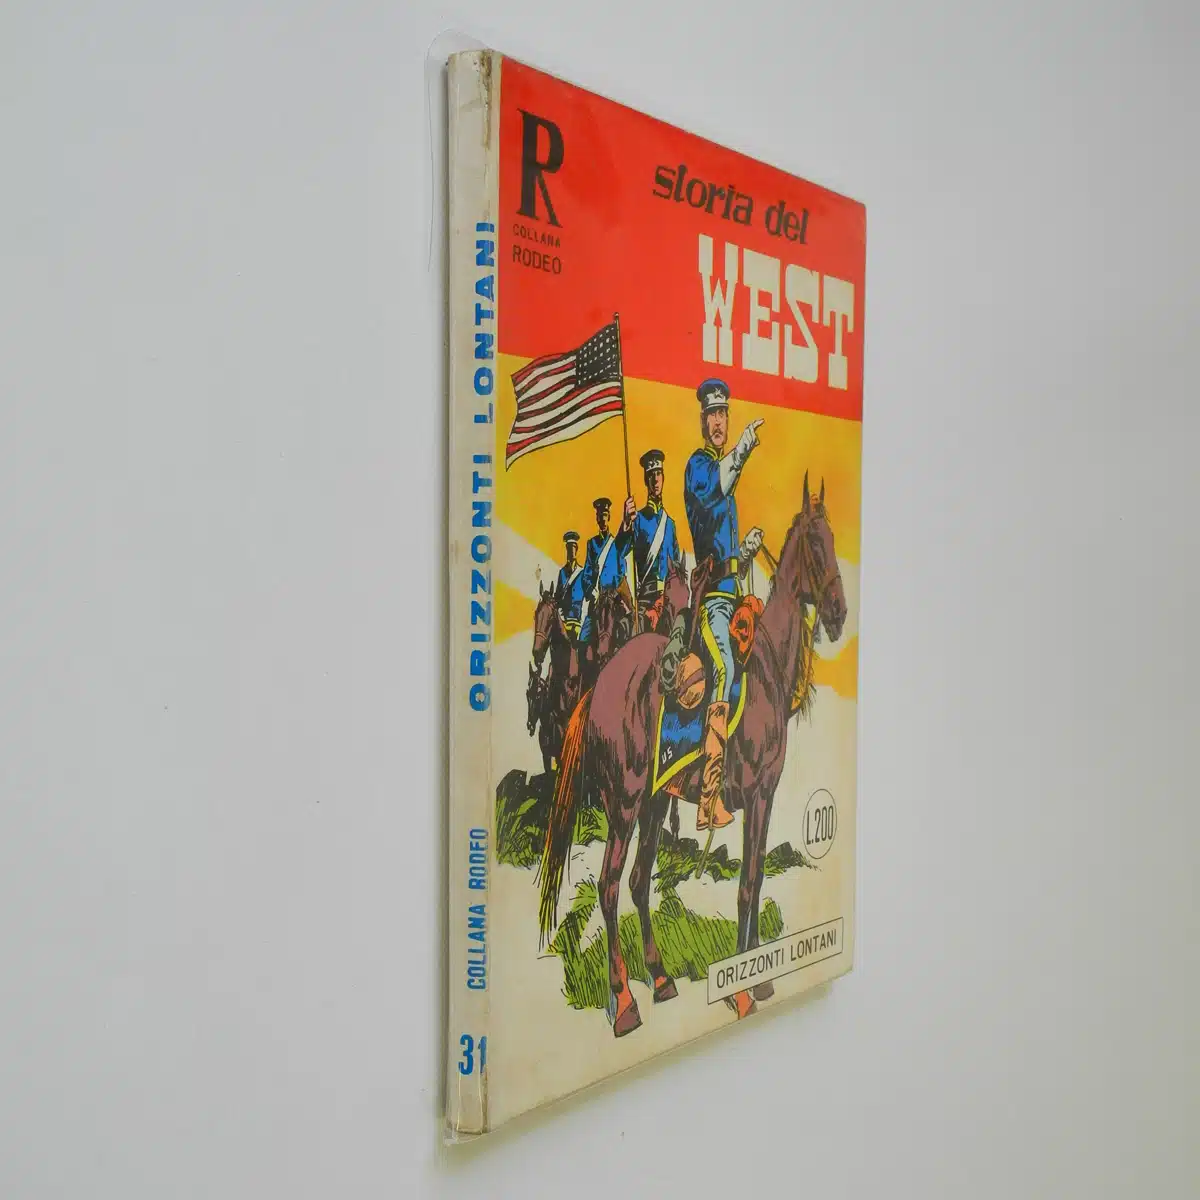 Collana Rodeo n. 31 Storia del West originale